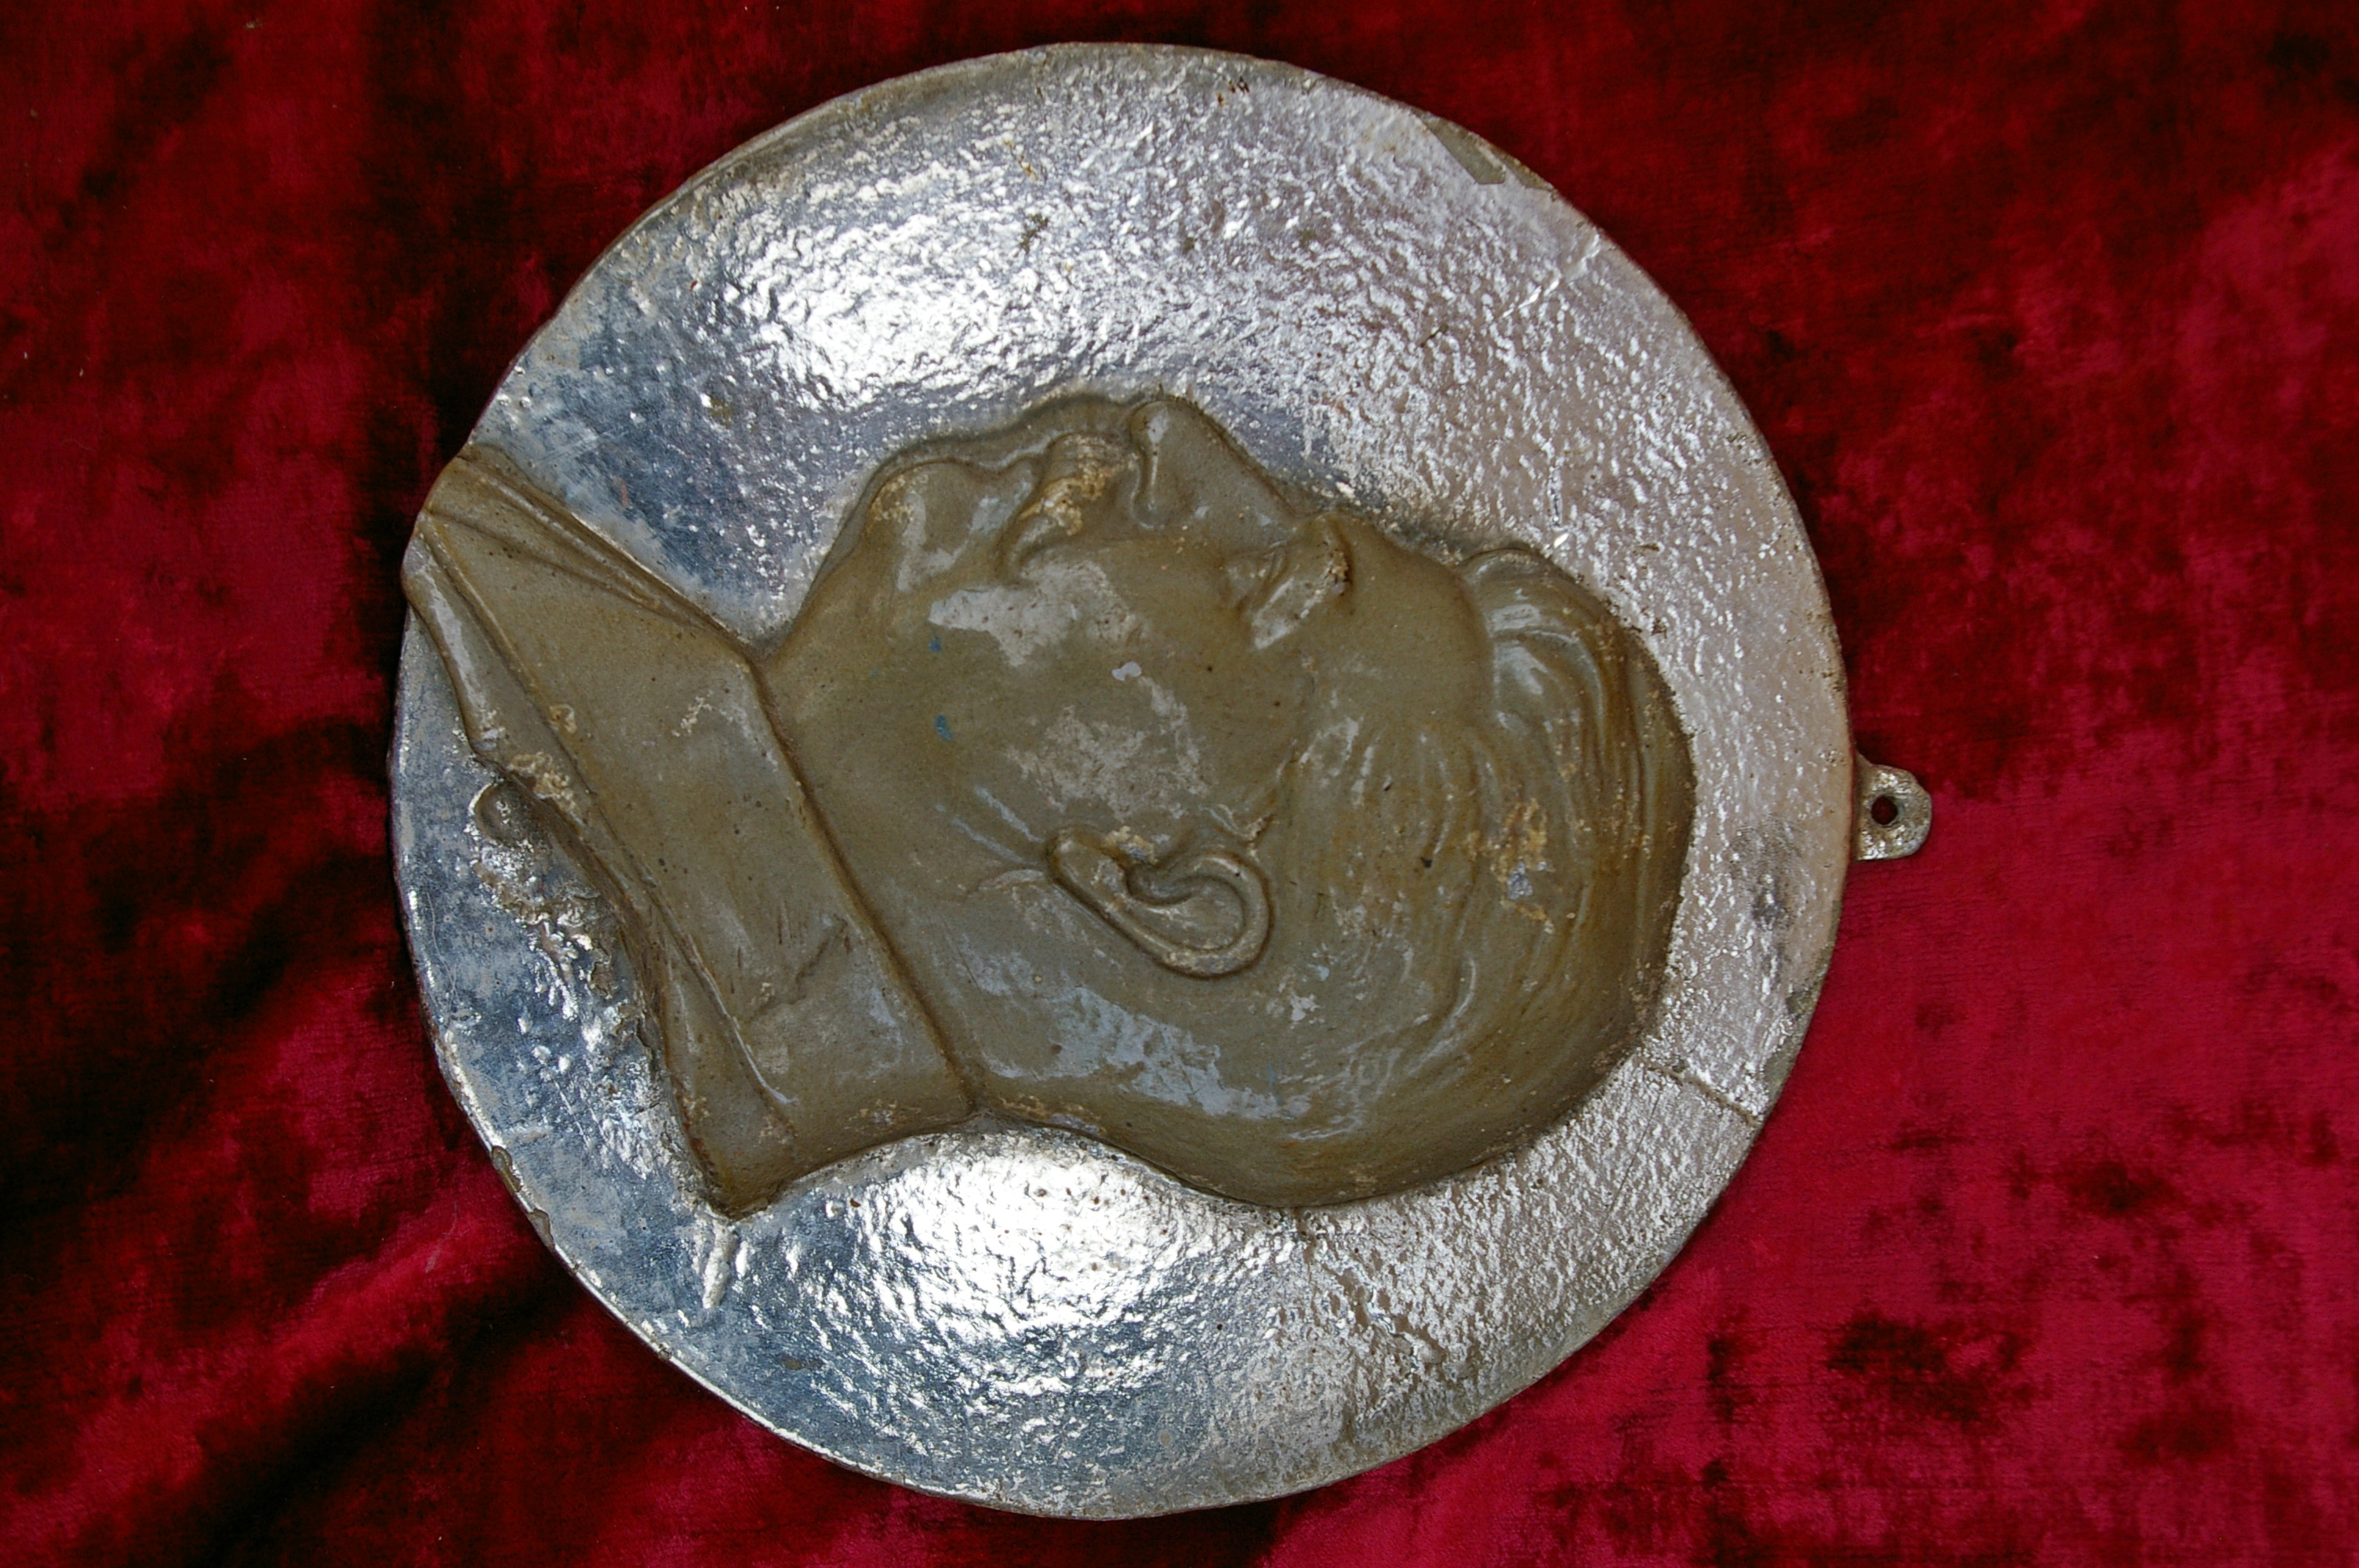  Барельеф Сталин, материал метал, ширина 24 см. - 1